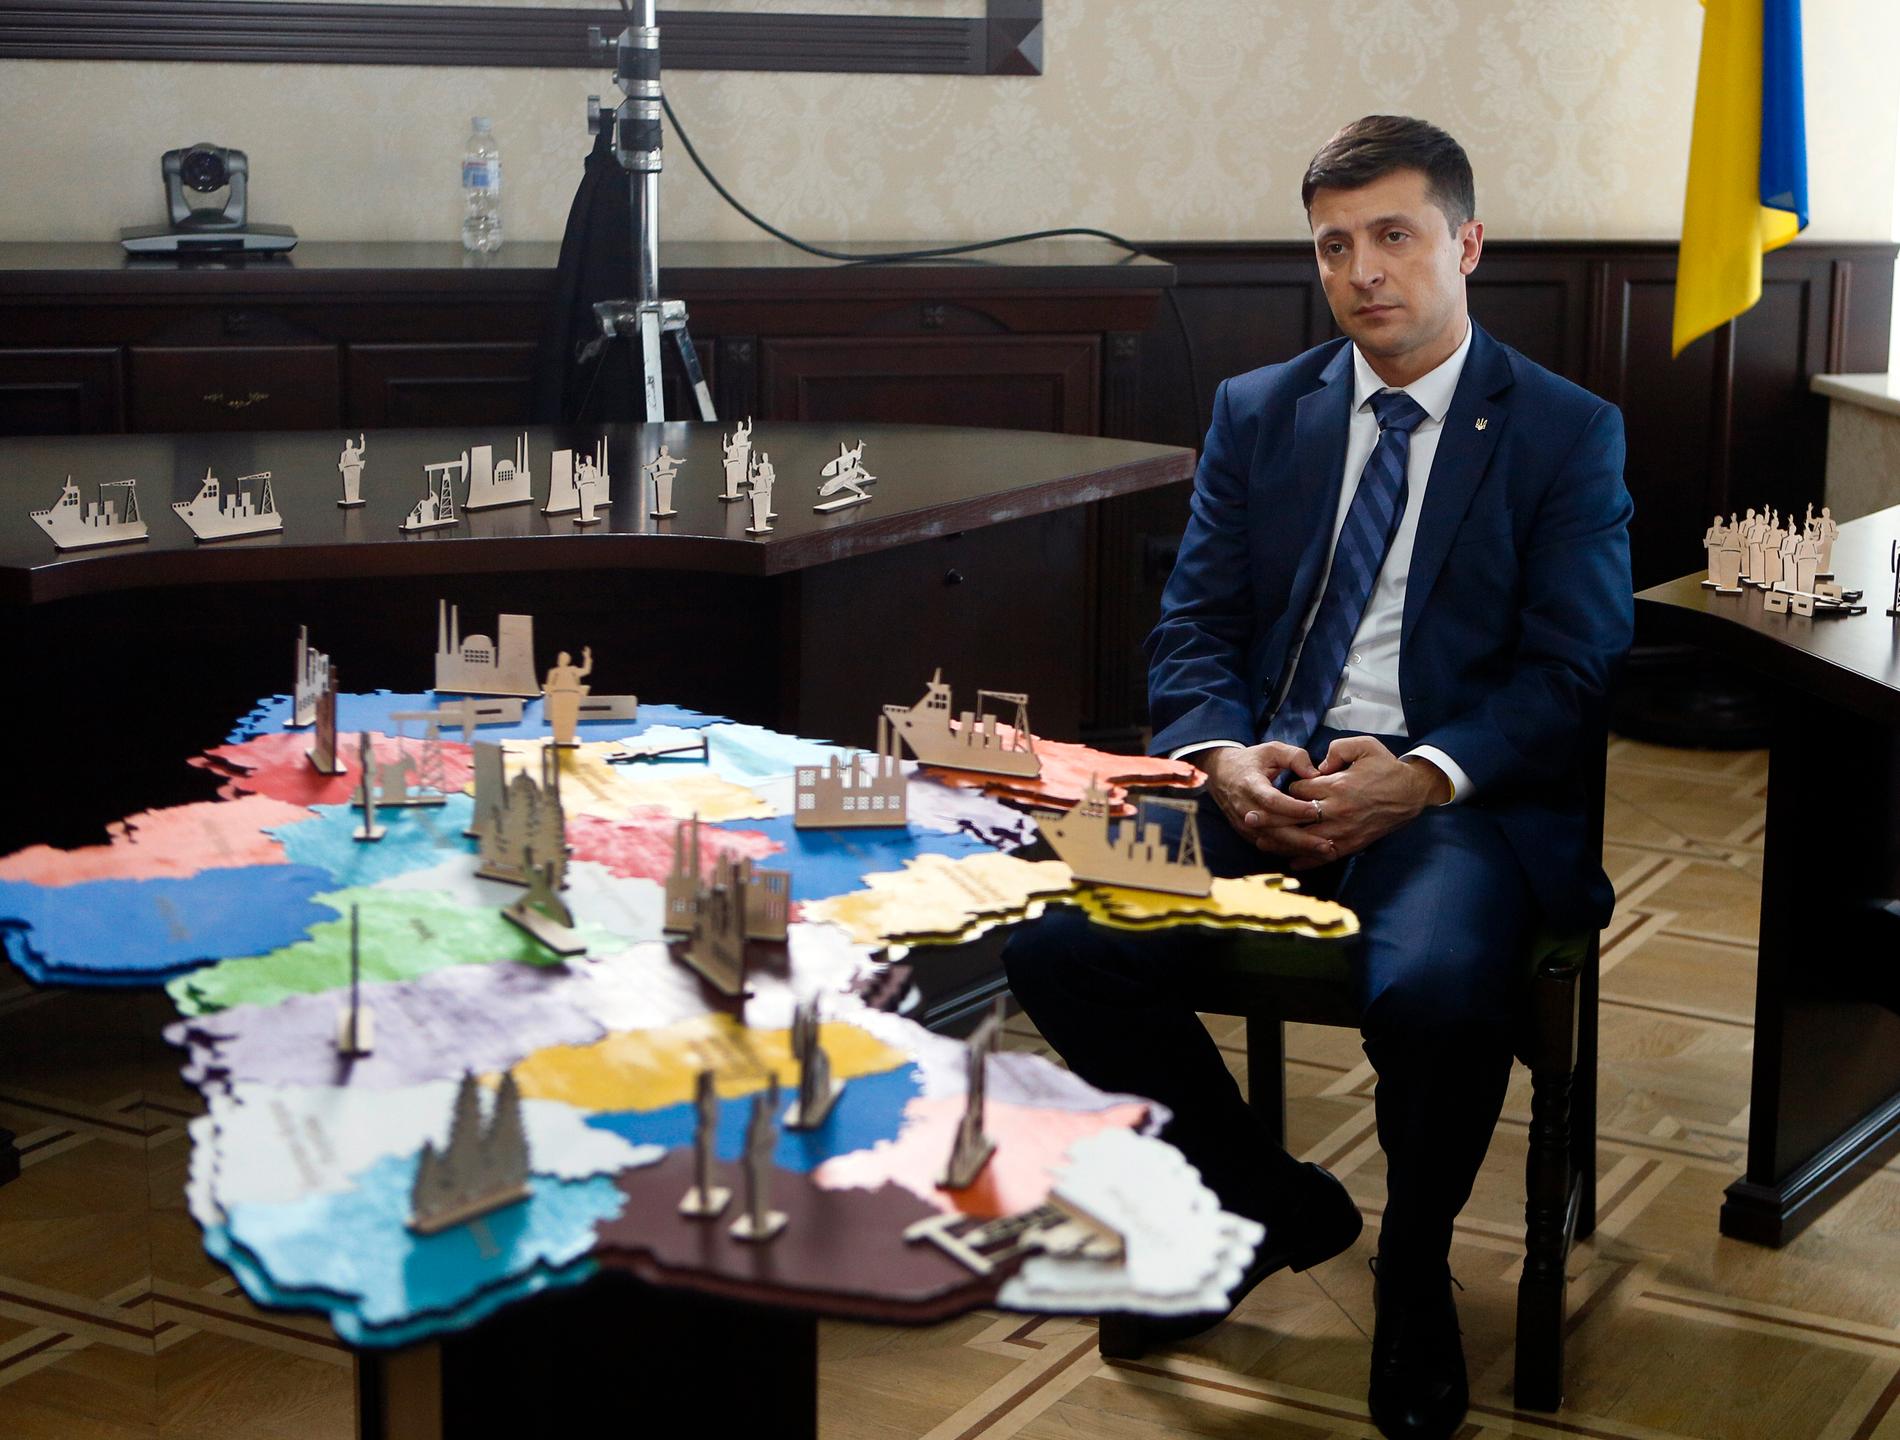 Ukrainska komikern och skådespelaren Volodymyr Zelensky har spelat president i en populär tv-serie i Ukraina. Nu ställer han upp i presidentvalet. Arkivbild.